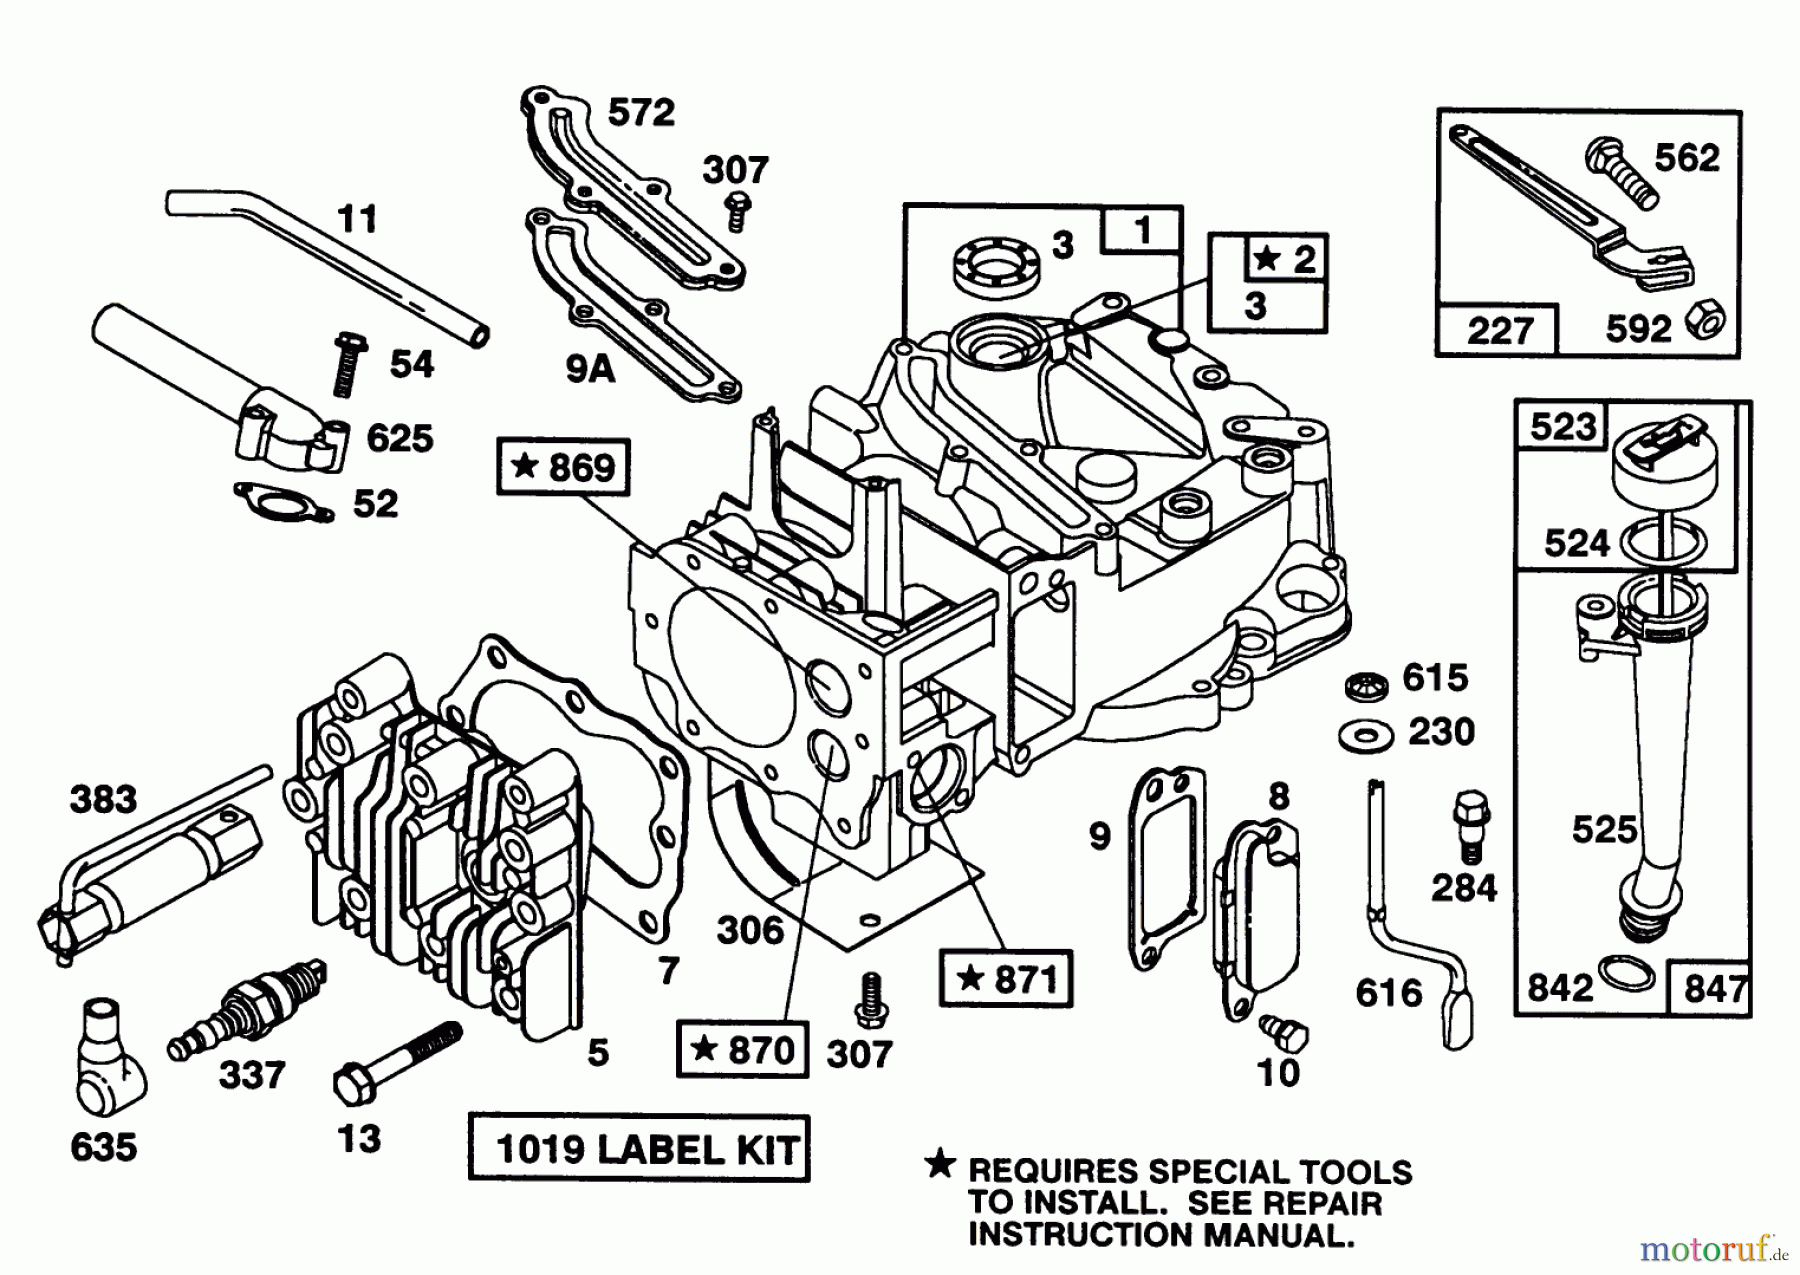  Toro Neu Mowers, Walk-Behind Seite 1 20213 - Toro Lawnmower, 1992 (2000001-2999999) ENGINE BRIGGS & STRATTON MODEL 124702-3115-01 #1